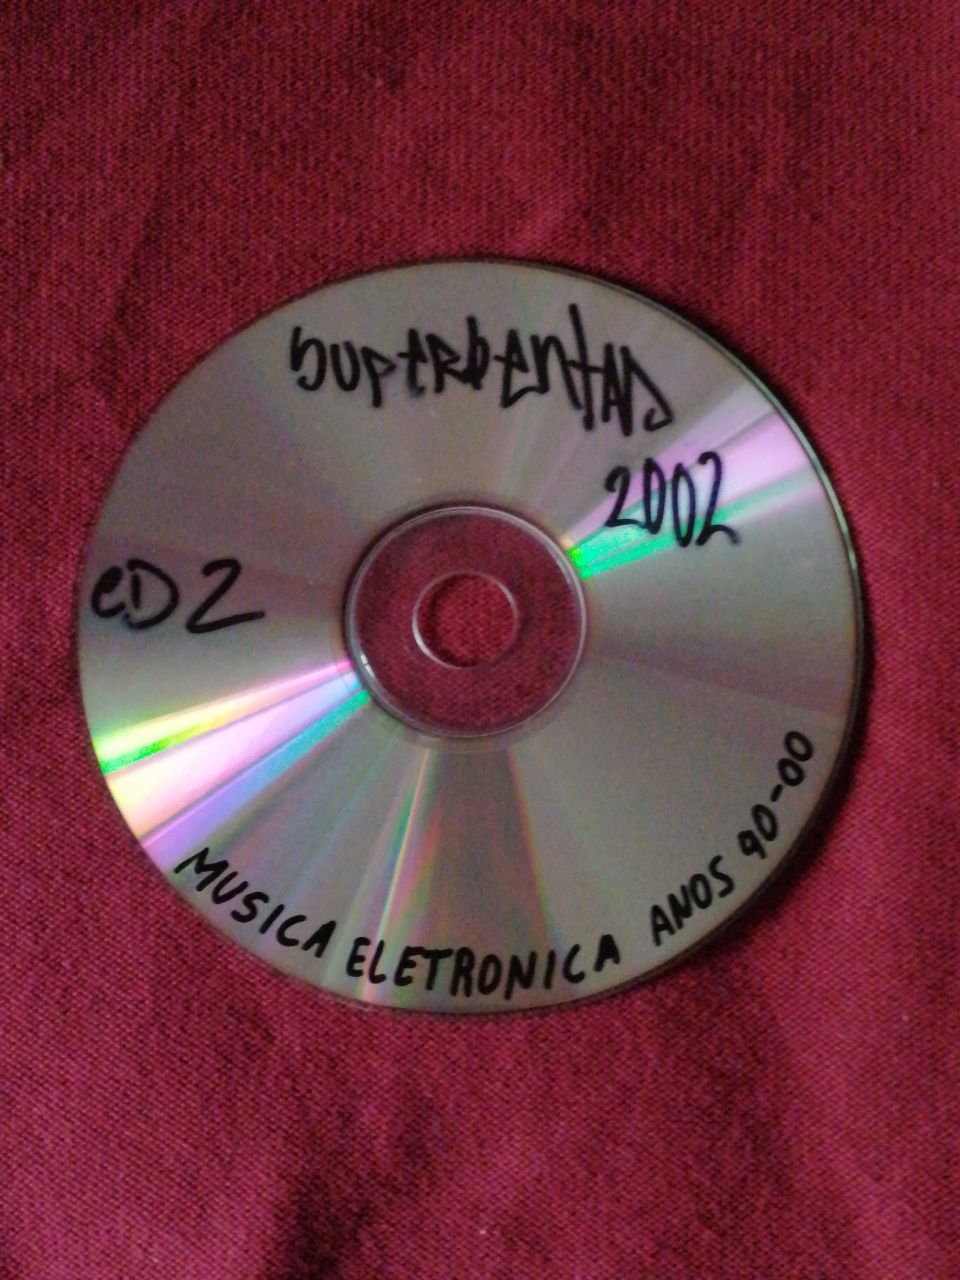 Superventas 2002 (CD 2) - Música eletrónica anos 90/00